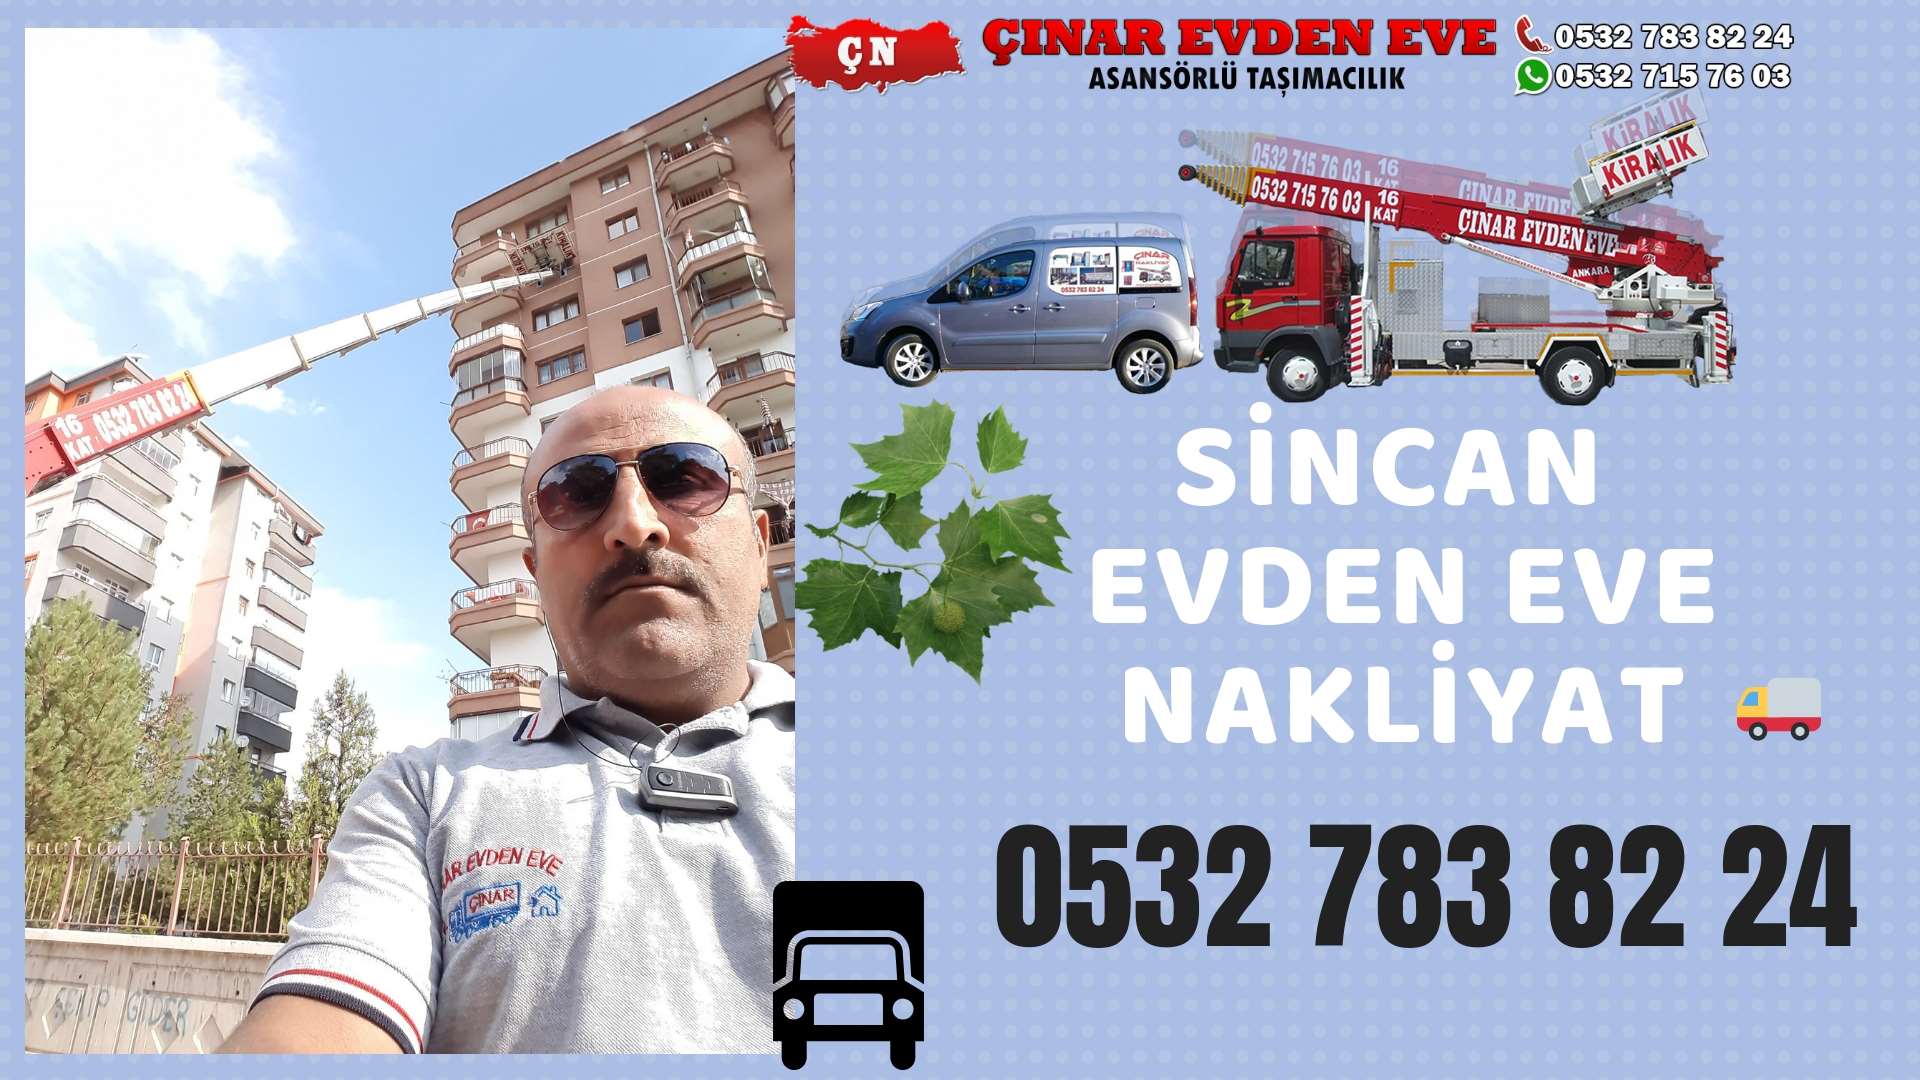 Ankara Turkuaz Toki Evden Eve Nakliyat, Asansörlü Taşımacılık, Ofis / İş Yeri Taşıma 0532 715 76 03